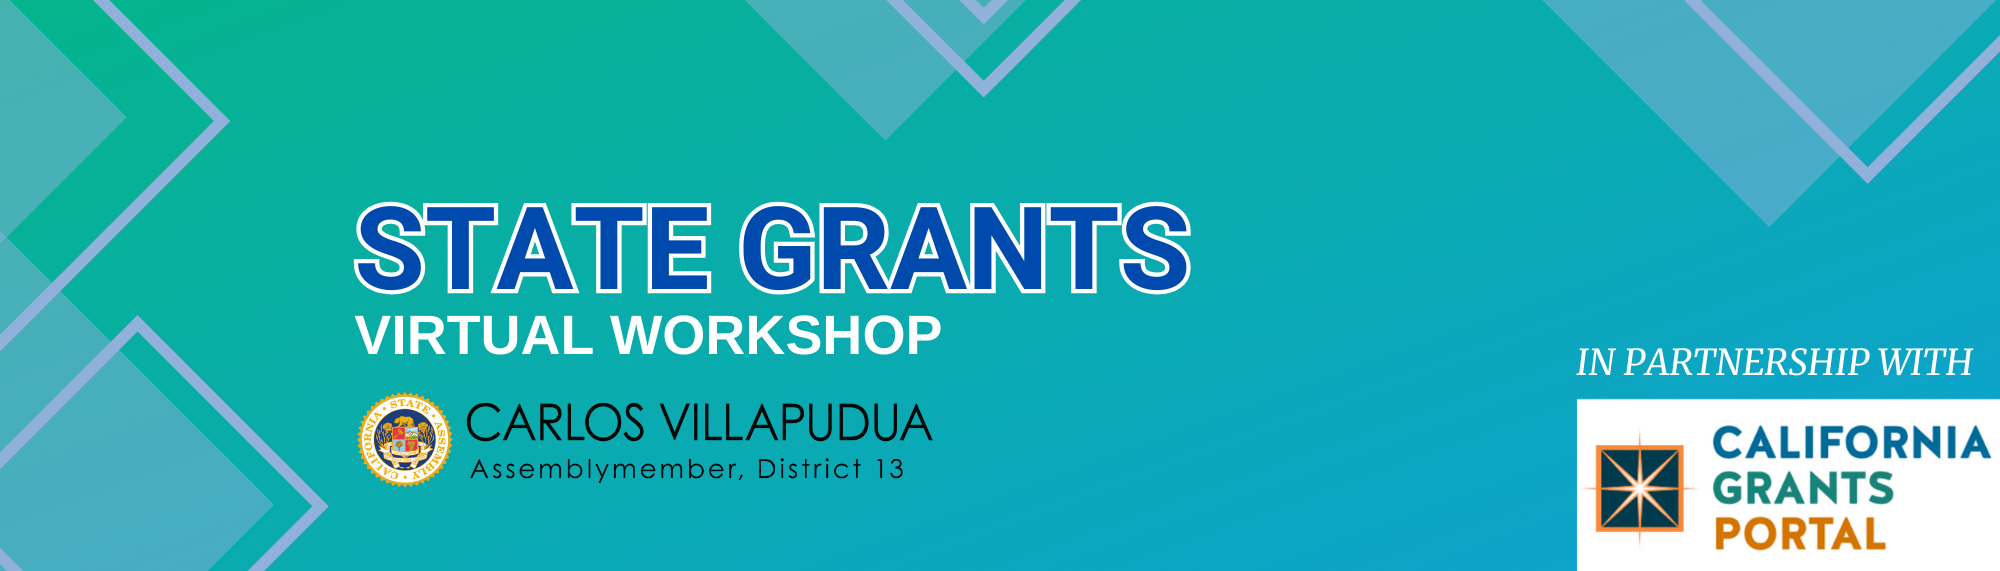 Blue/Green banner image titled "State Grants Virtual Workshop"